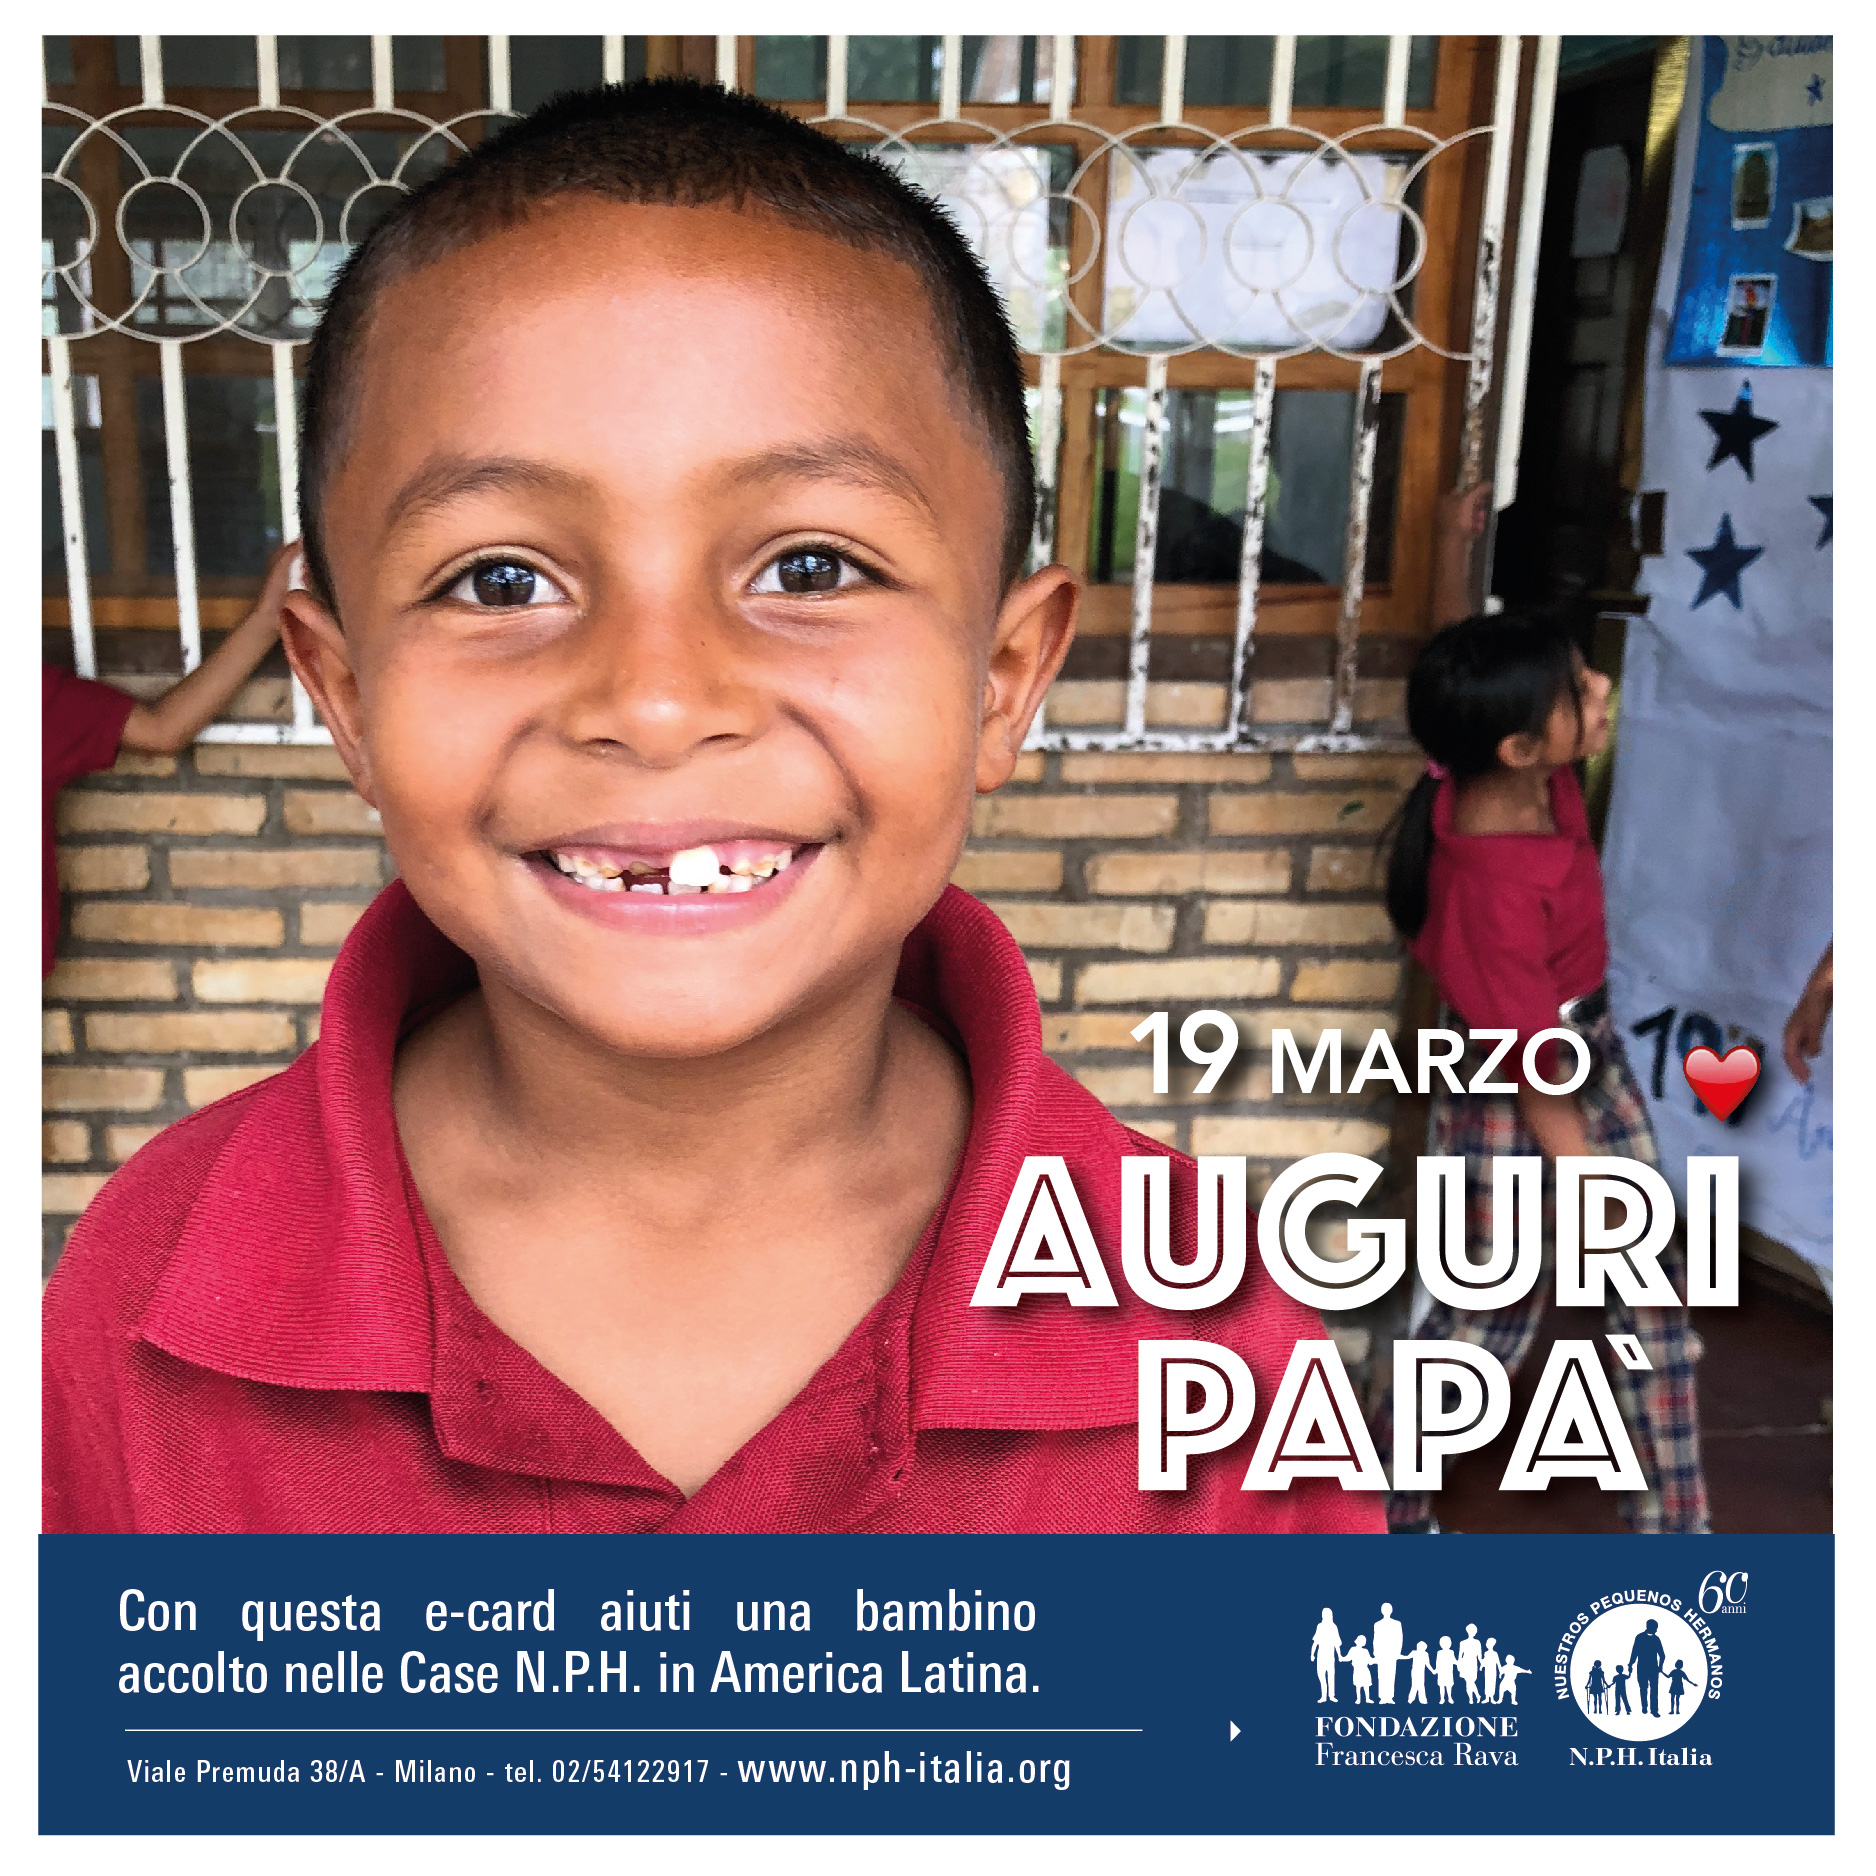 19 marzo, Festa del papà: celebra questa giornata aiutando un bambino accolto nelle Case NPH in America Latina!